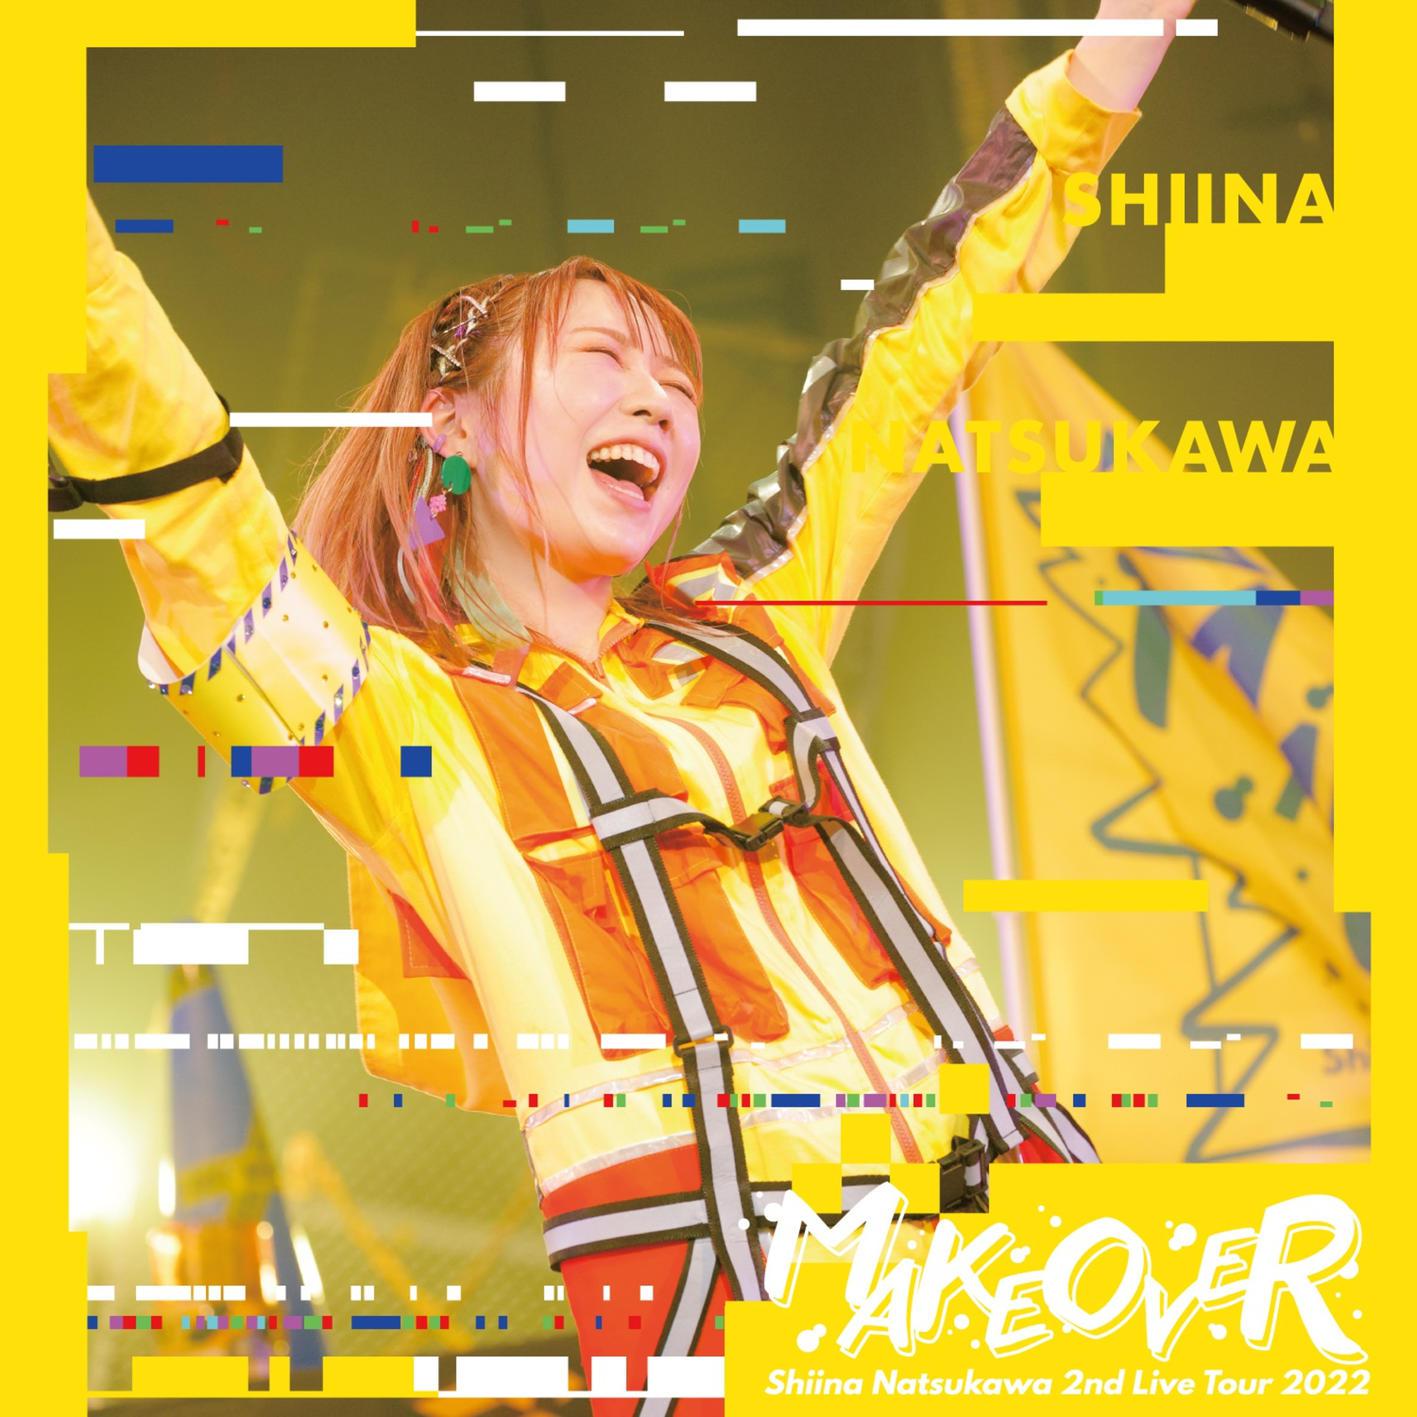 夏川椎菜 - パレイド (夏川椎菜 2nd Live Tour 2022 MAKEOVER Live at 中野サンプラザ)